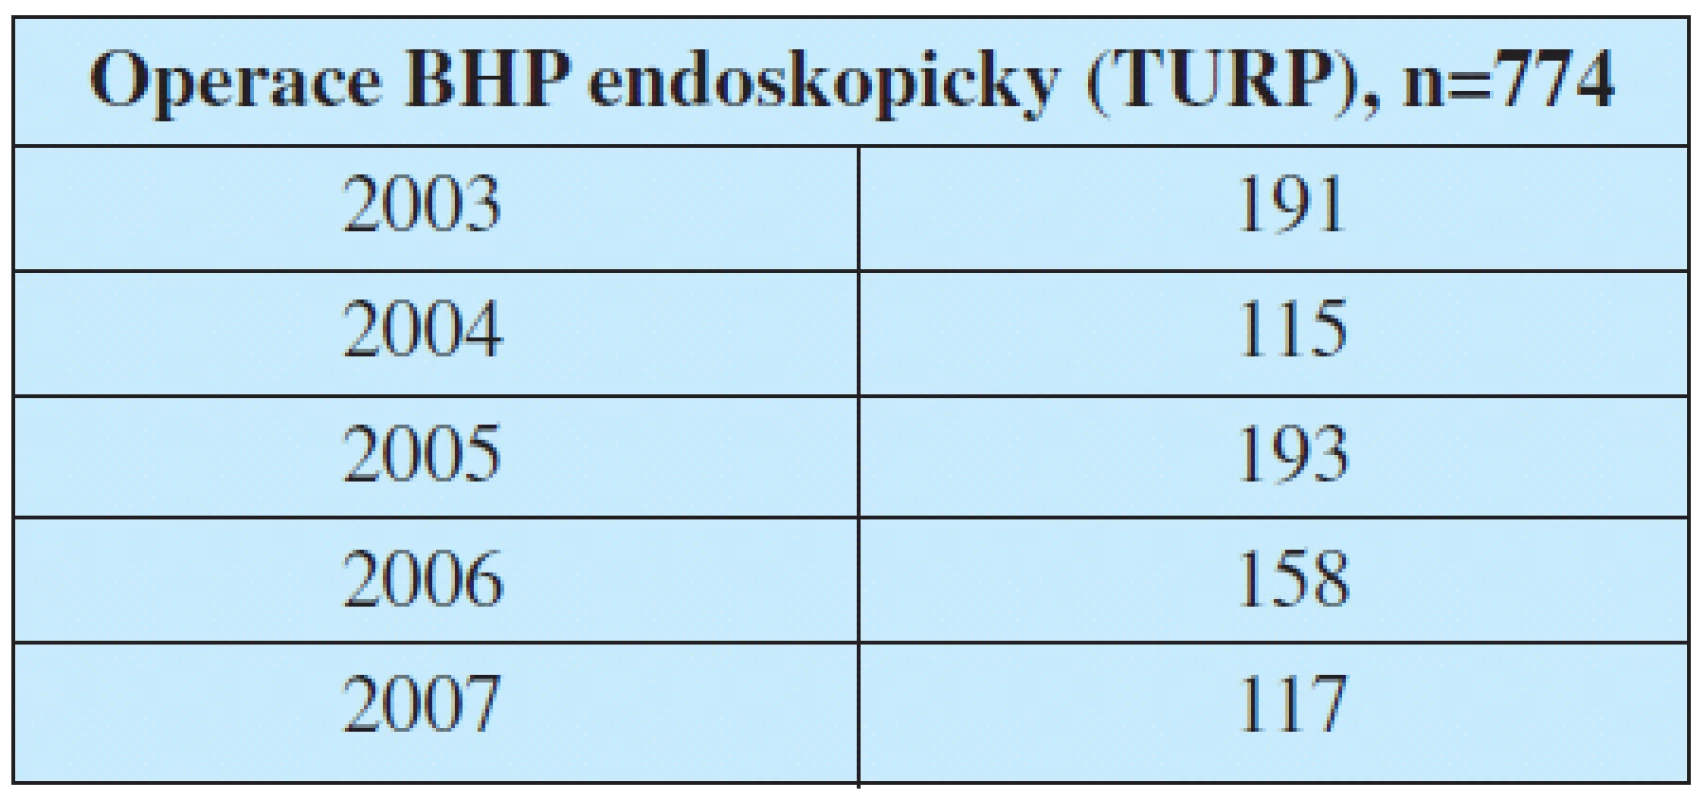 Počet provedených operací BHP endoskopicky.